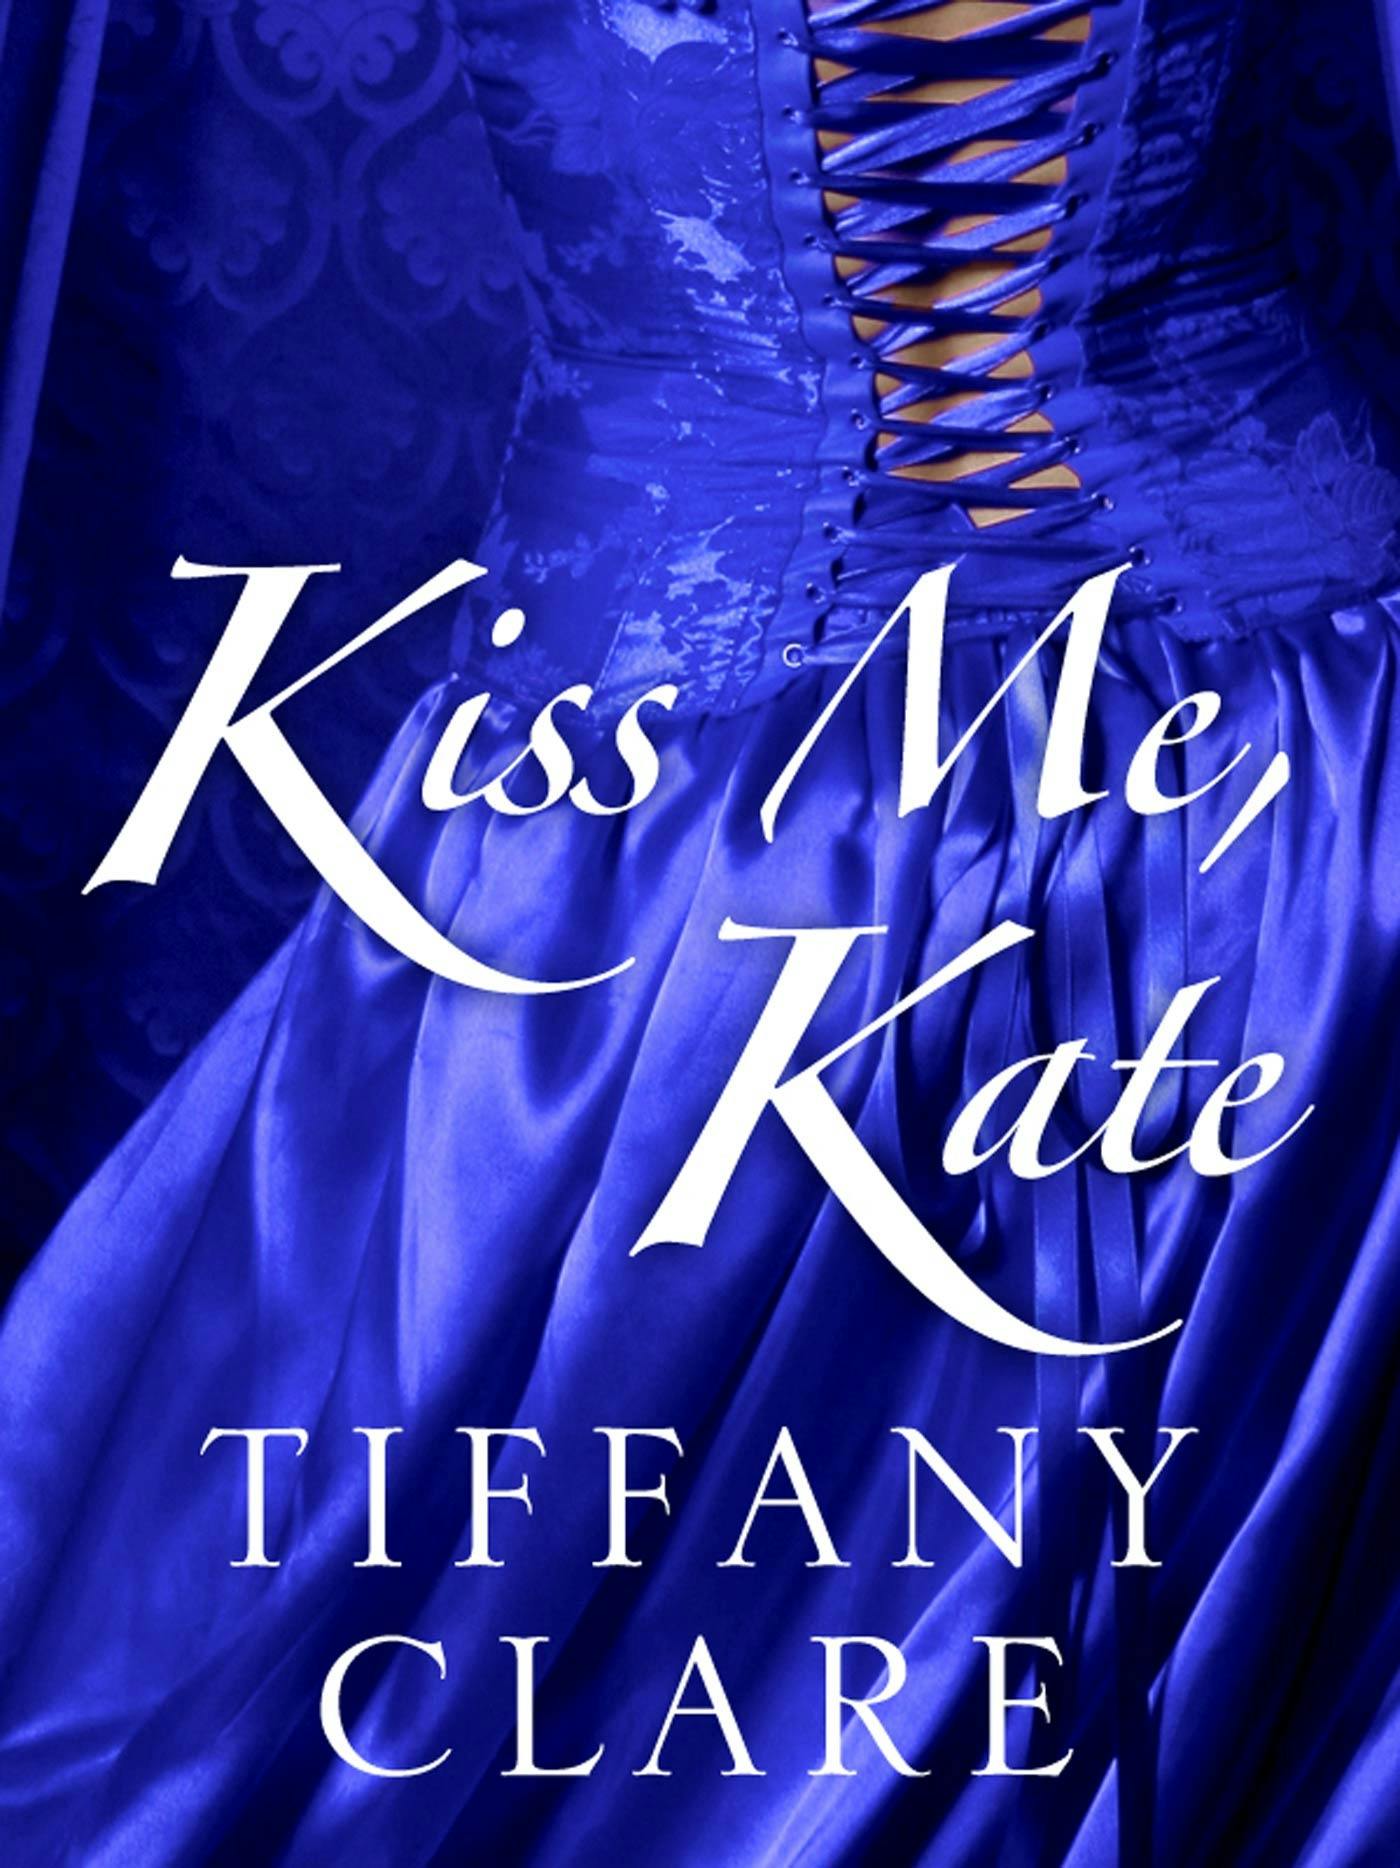 Image of Kiss Me, Kate